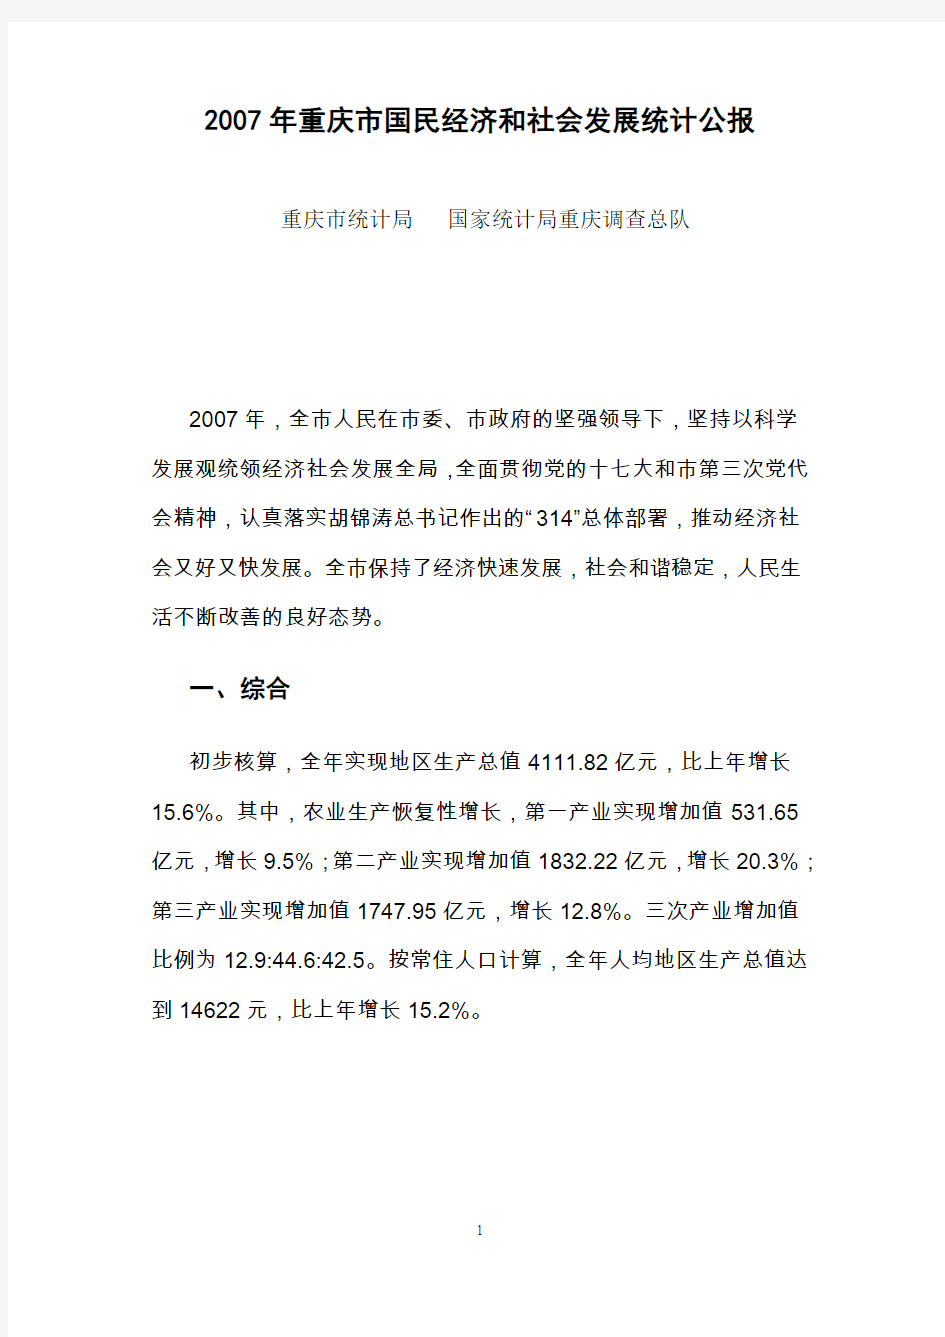 2007年重庆市国民经济和社会发展统计公报-重庆市统计局